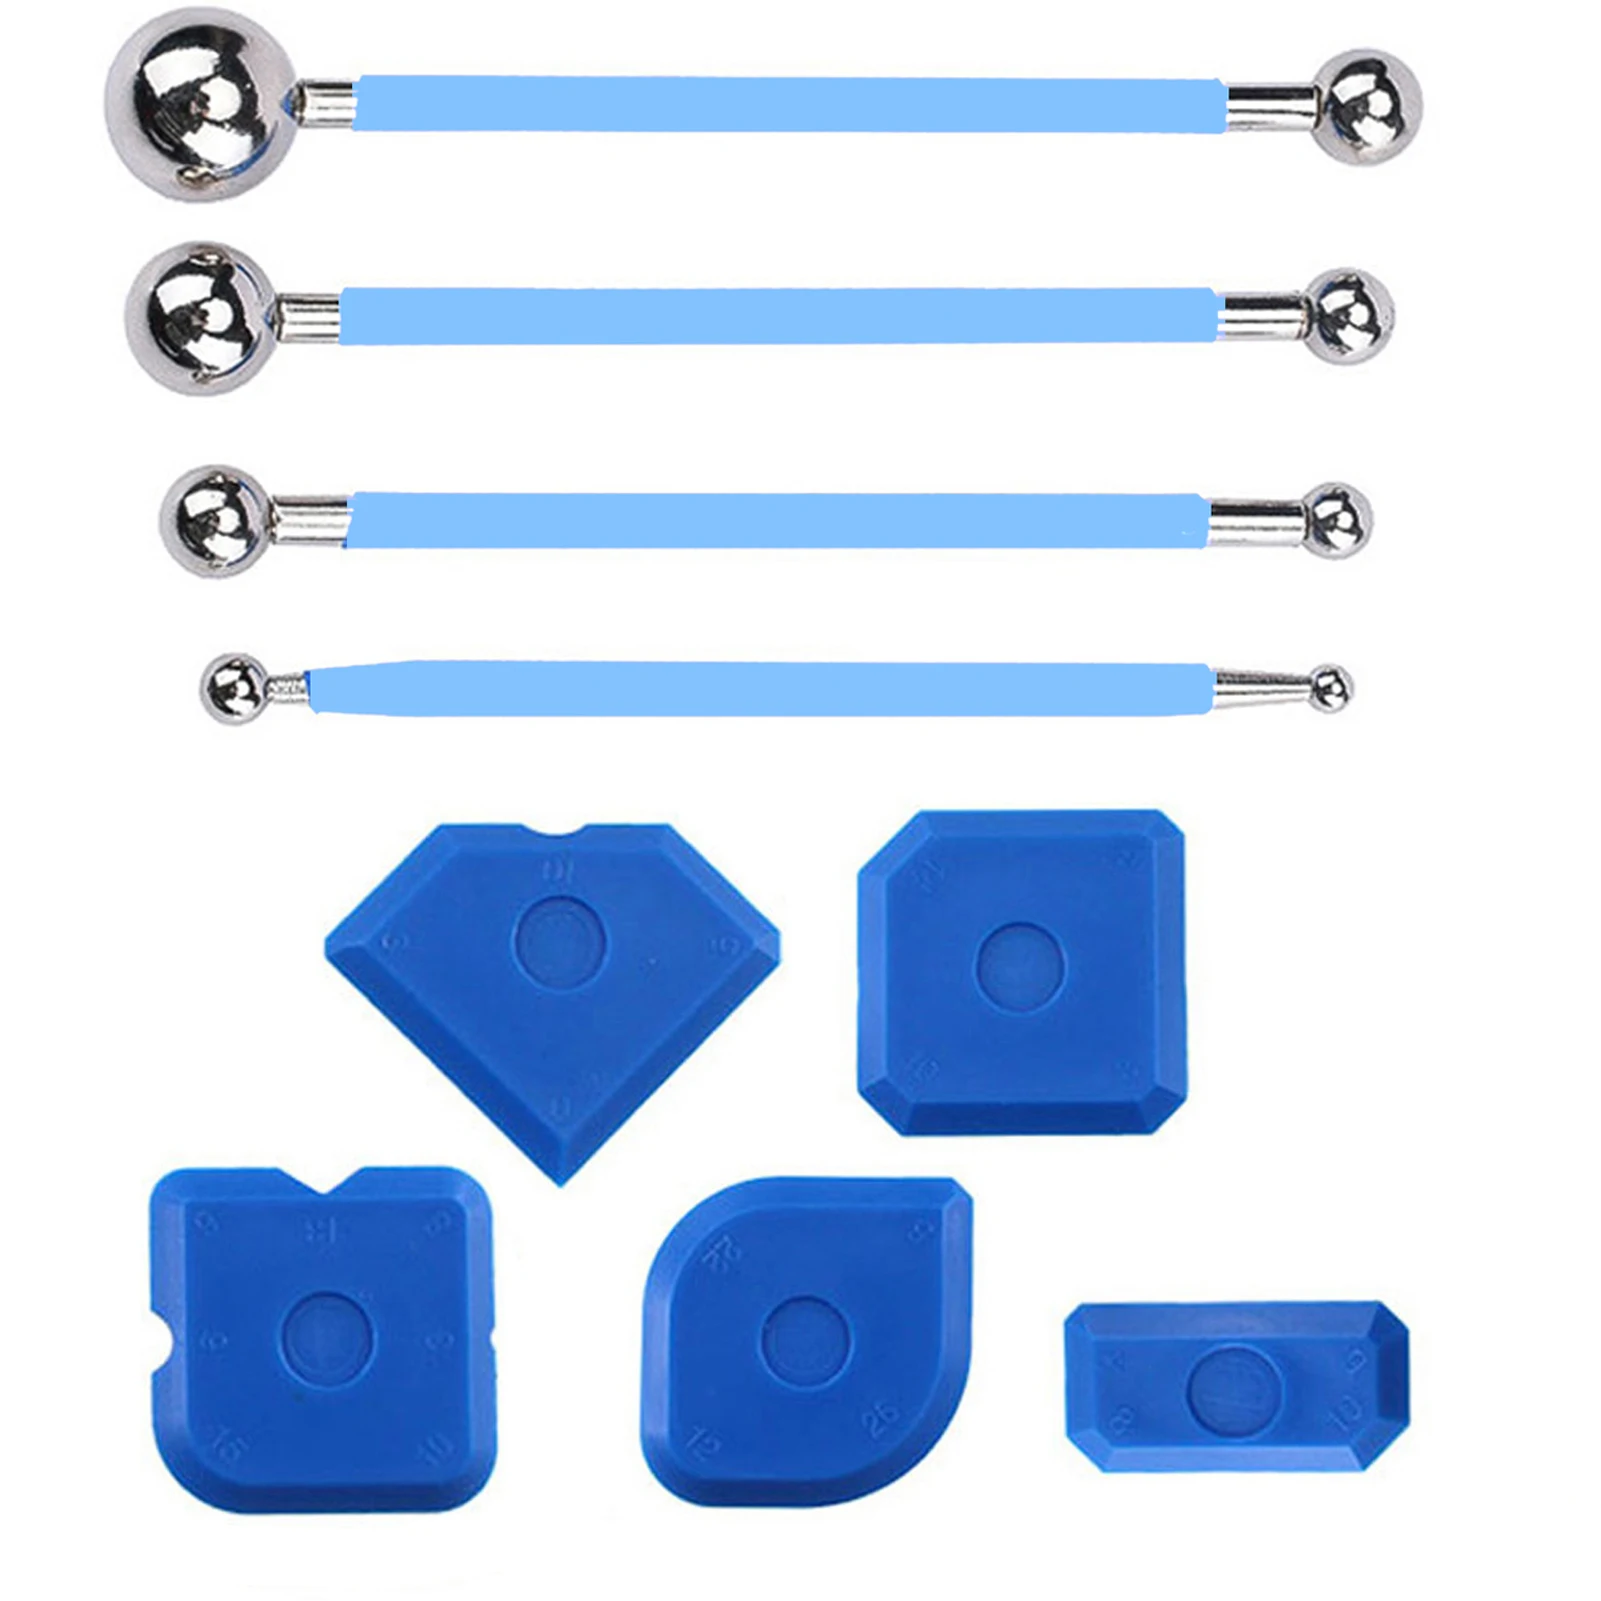 

9pcs Caulking Tool Kit Portable Blue Floor Remover Plastic Scraper Kitchen Tiles Sealant Finishing Multi Edge Metal Ball Puller